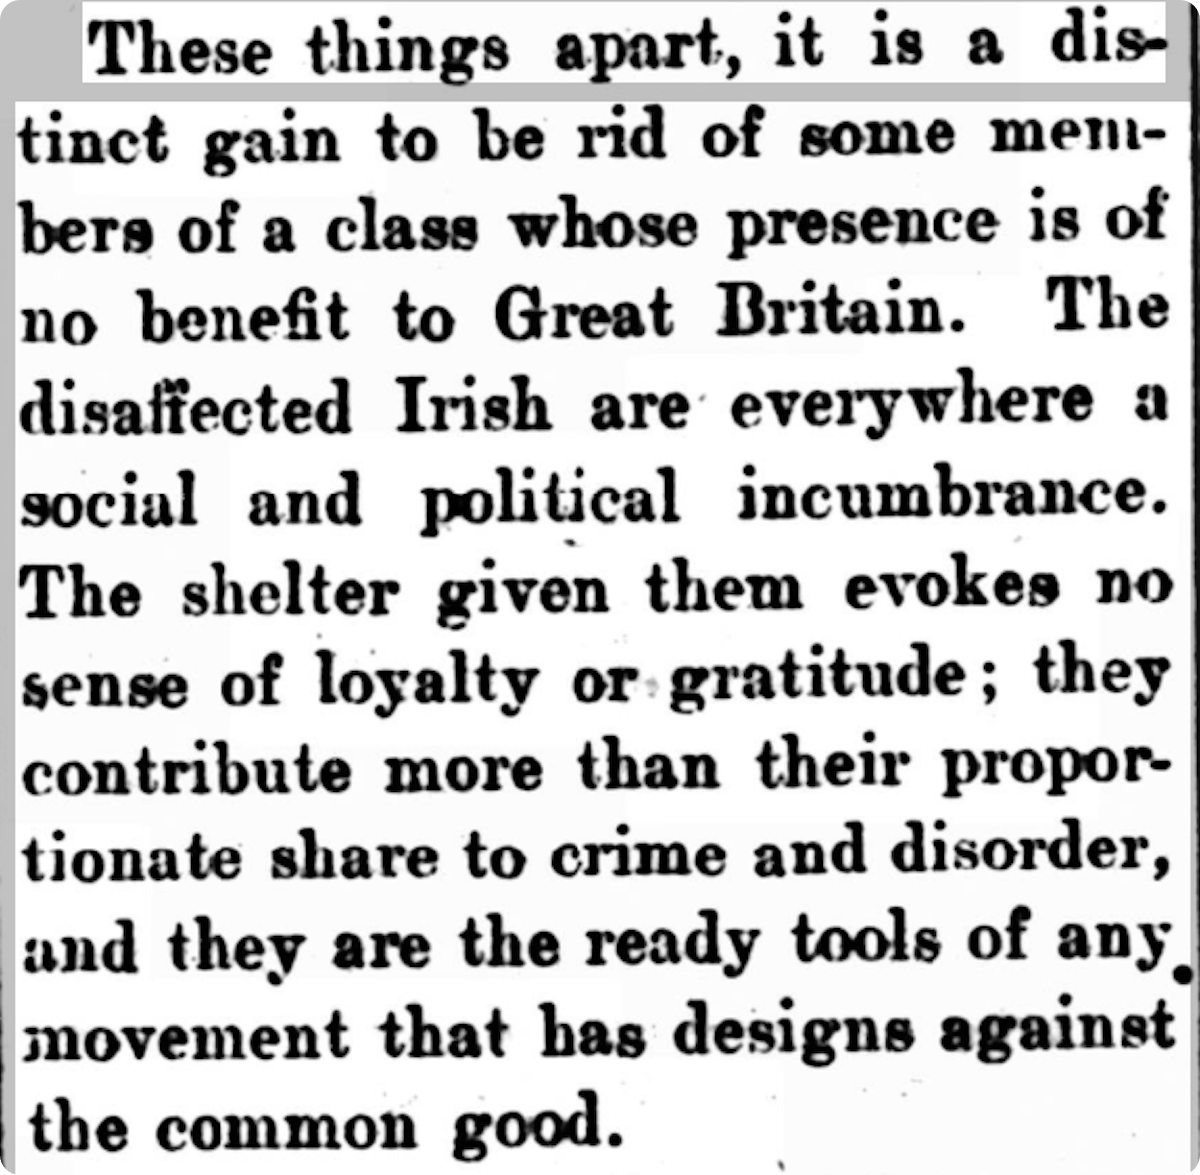 A 1923 newspaper article, denouncing Irish migrants as ungrateful criminals